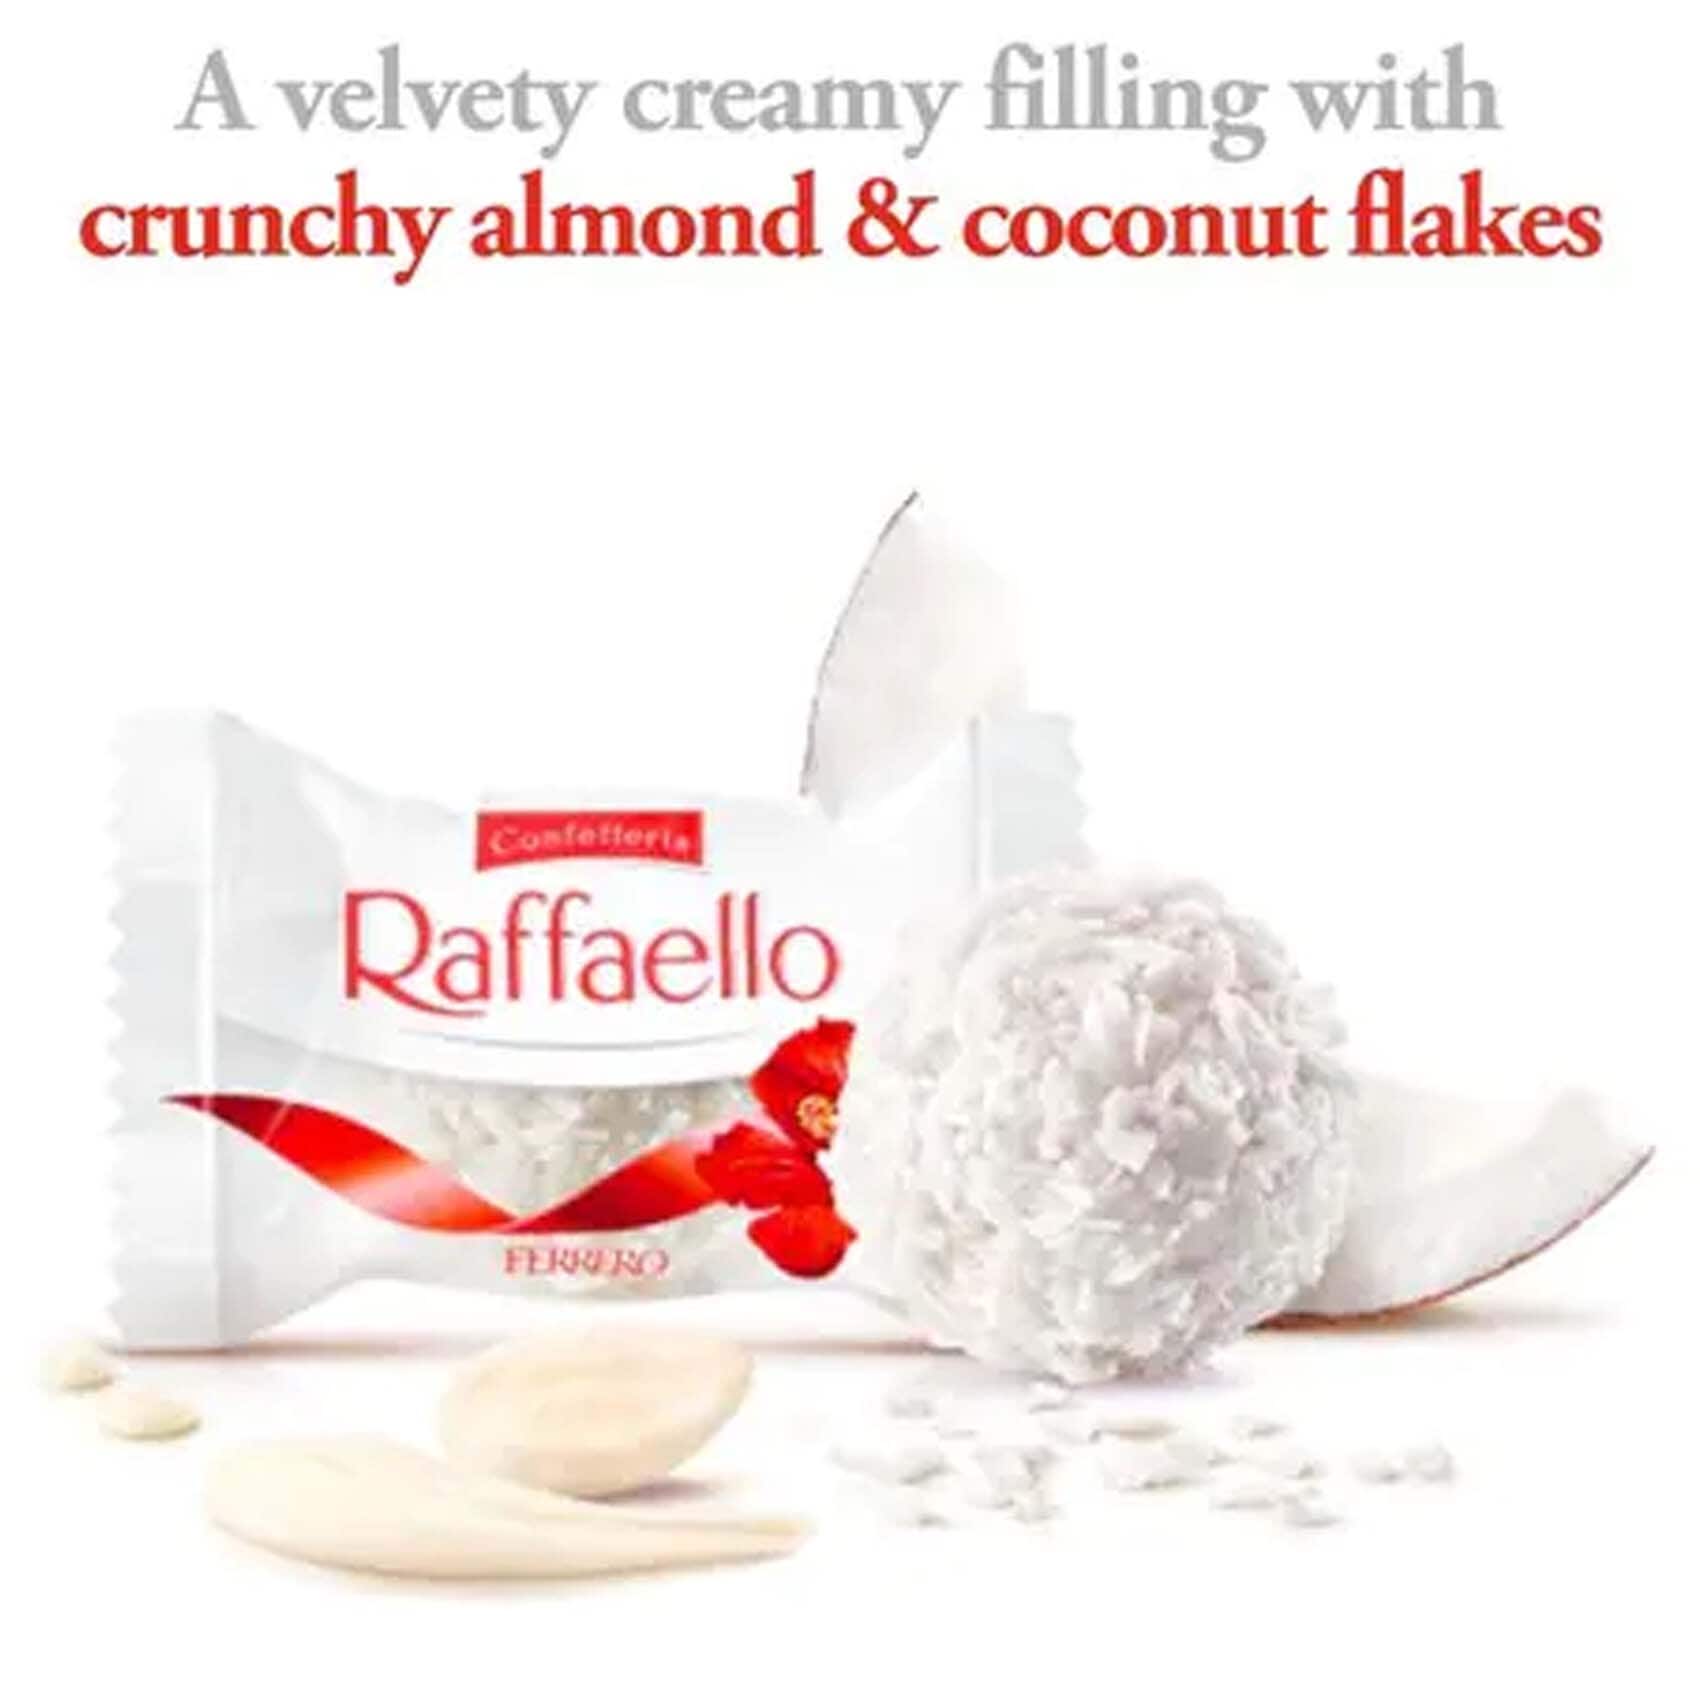 Raffaello Coconut and Almond 24 Pack wholesale in Australia